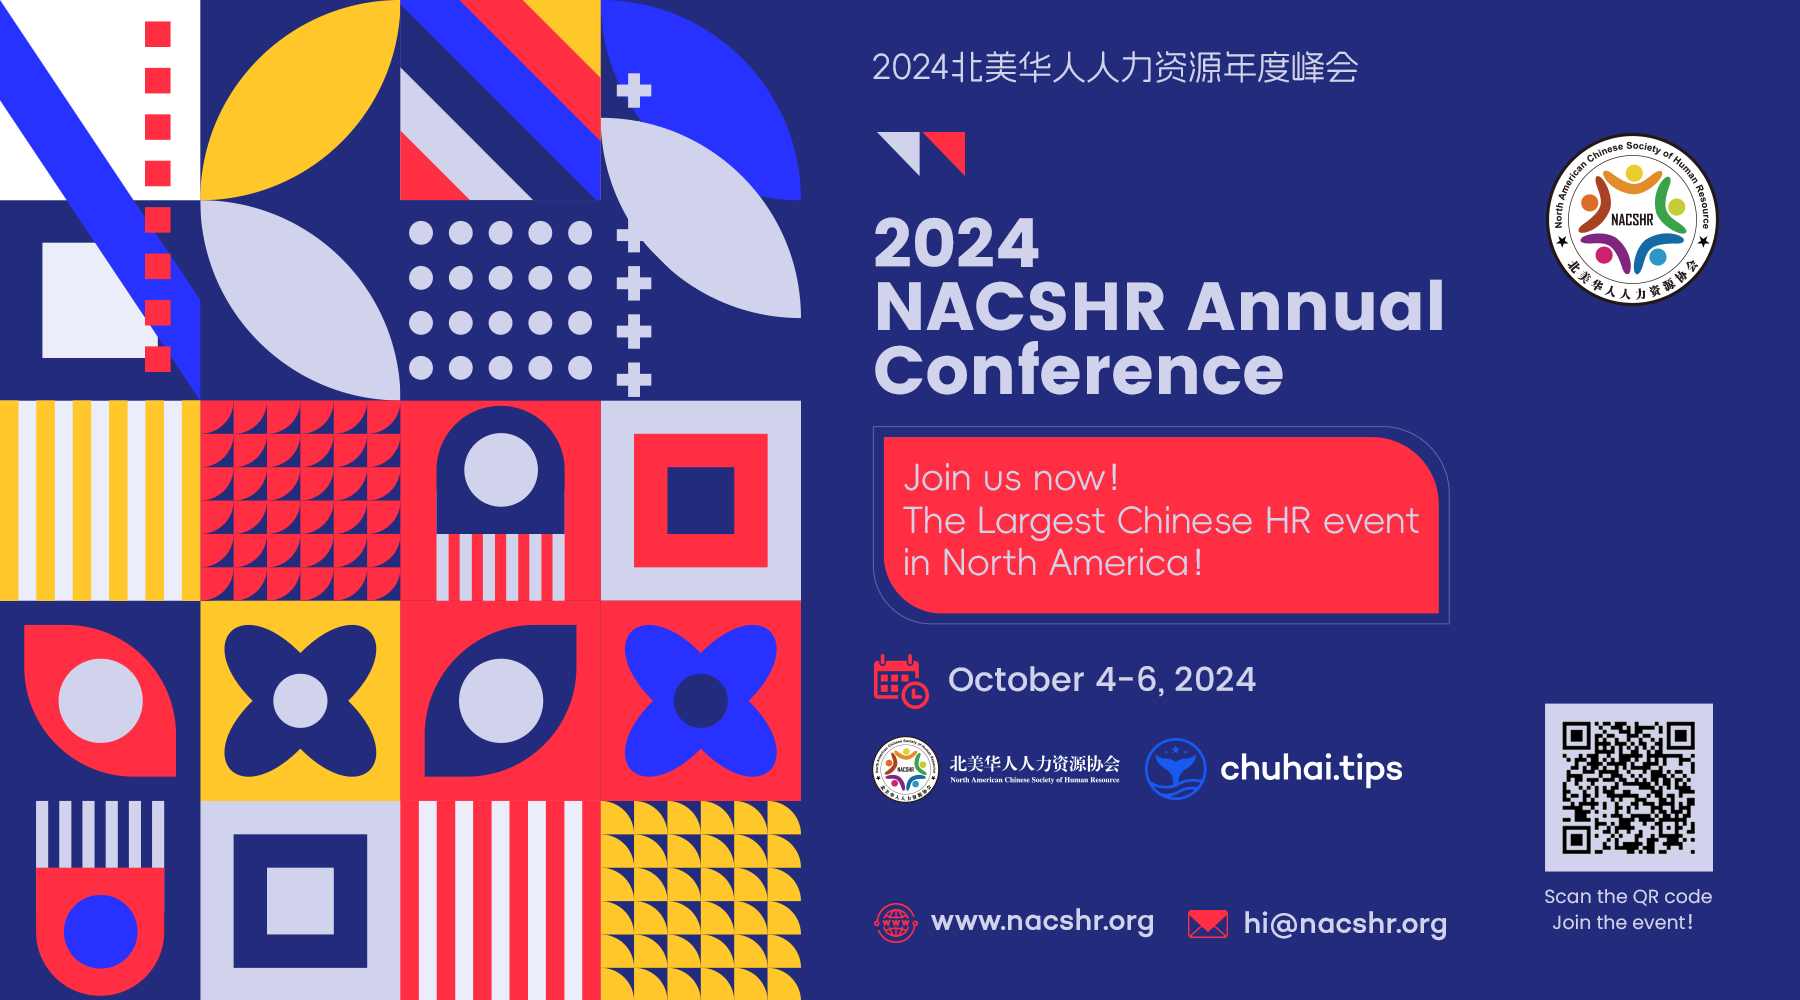 【重磅】北美地区最大的华人人力资源盛会-2024北美华人人力资源年度峰会10月硅谷举办，欢迎参加